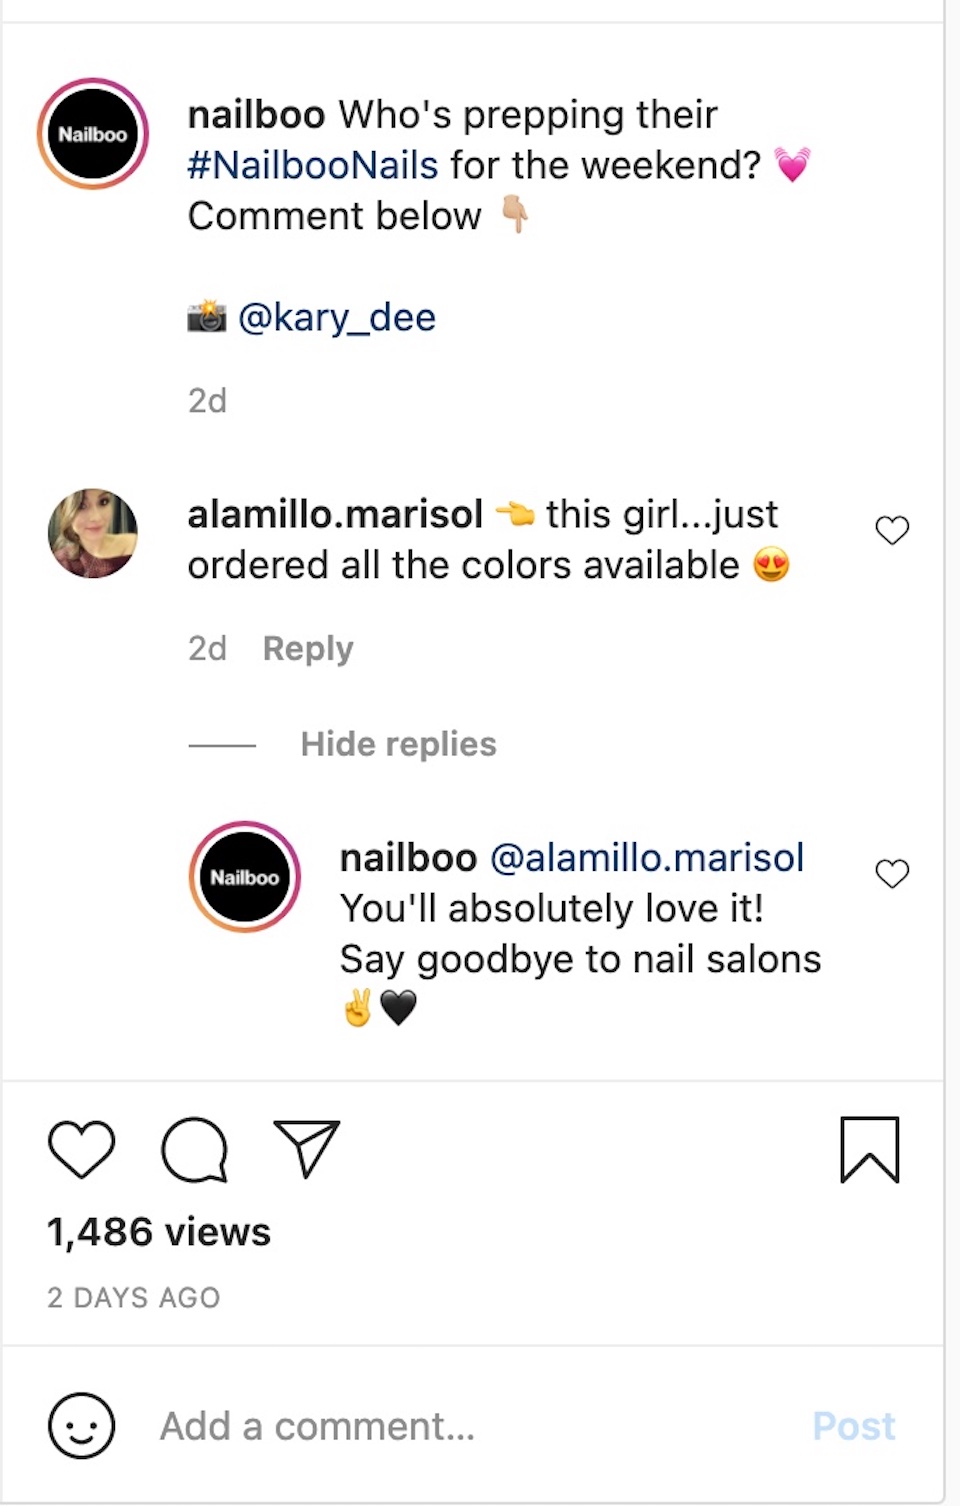 Das Nagelproduktunternehmen Nailboo ist bei der Interaktion mit einem Kommentator zu einem Beitrag auf seinem Instagram-Konto vertreten.